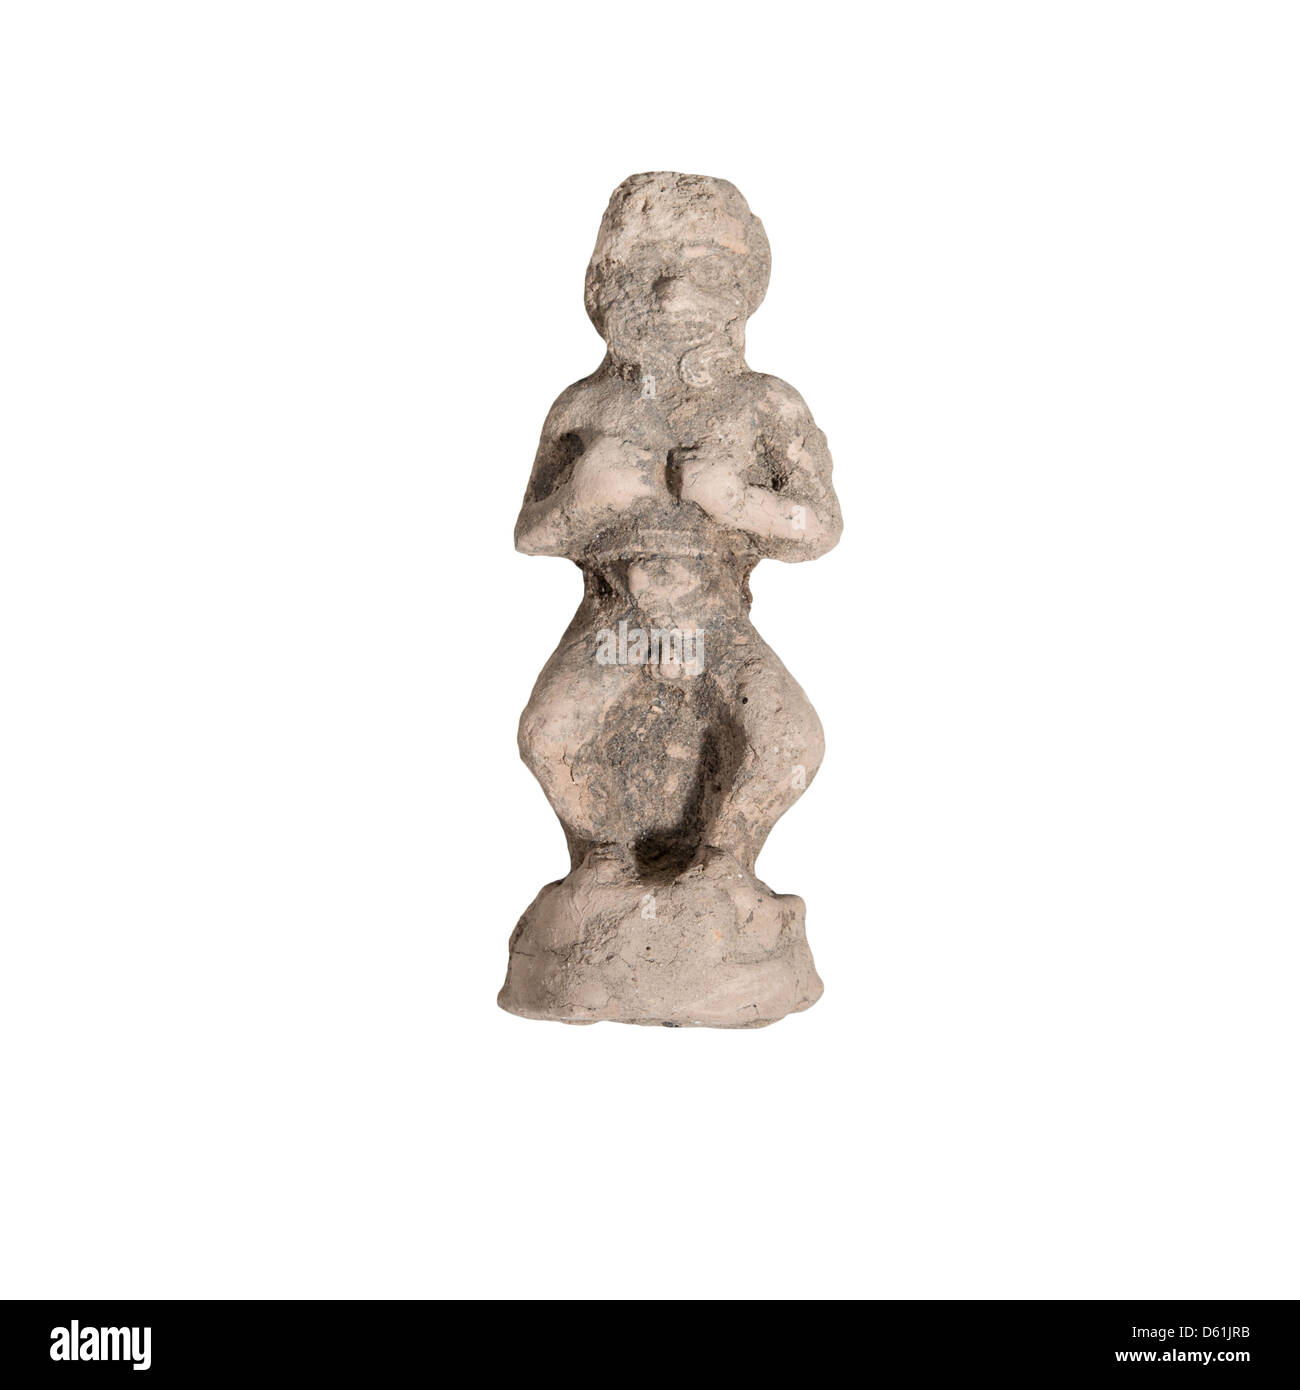 Une figurine en argile de Humbaba l'Assyrien gardien de la forêt de cèdres, 2e millénaire BCE Banque D'Images